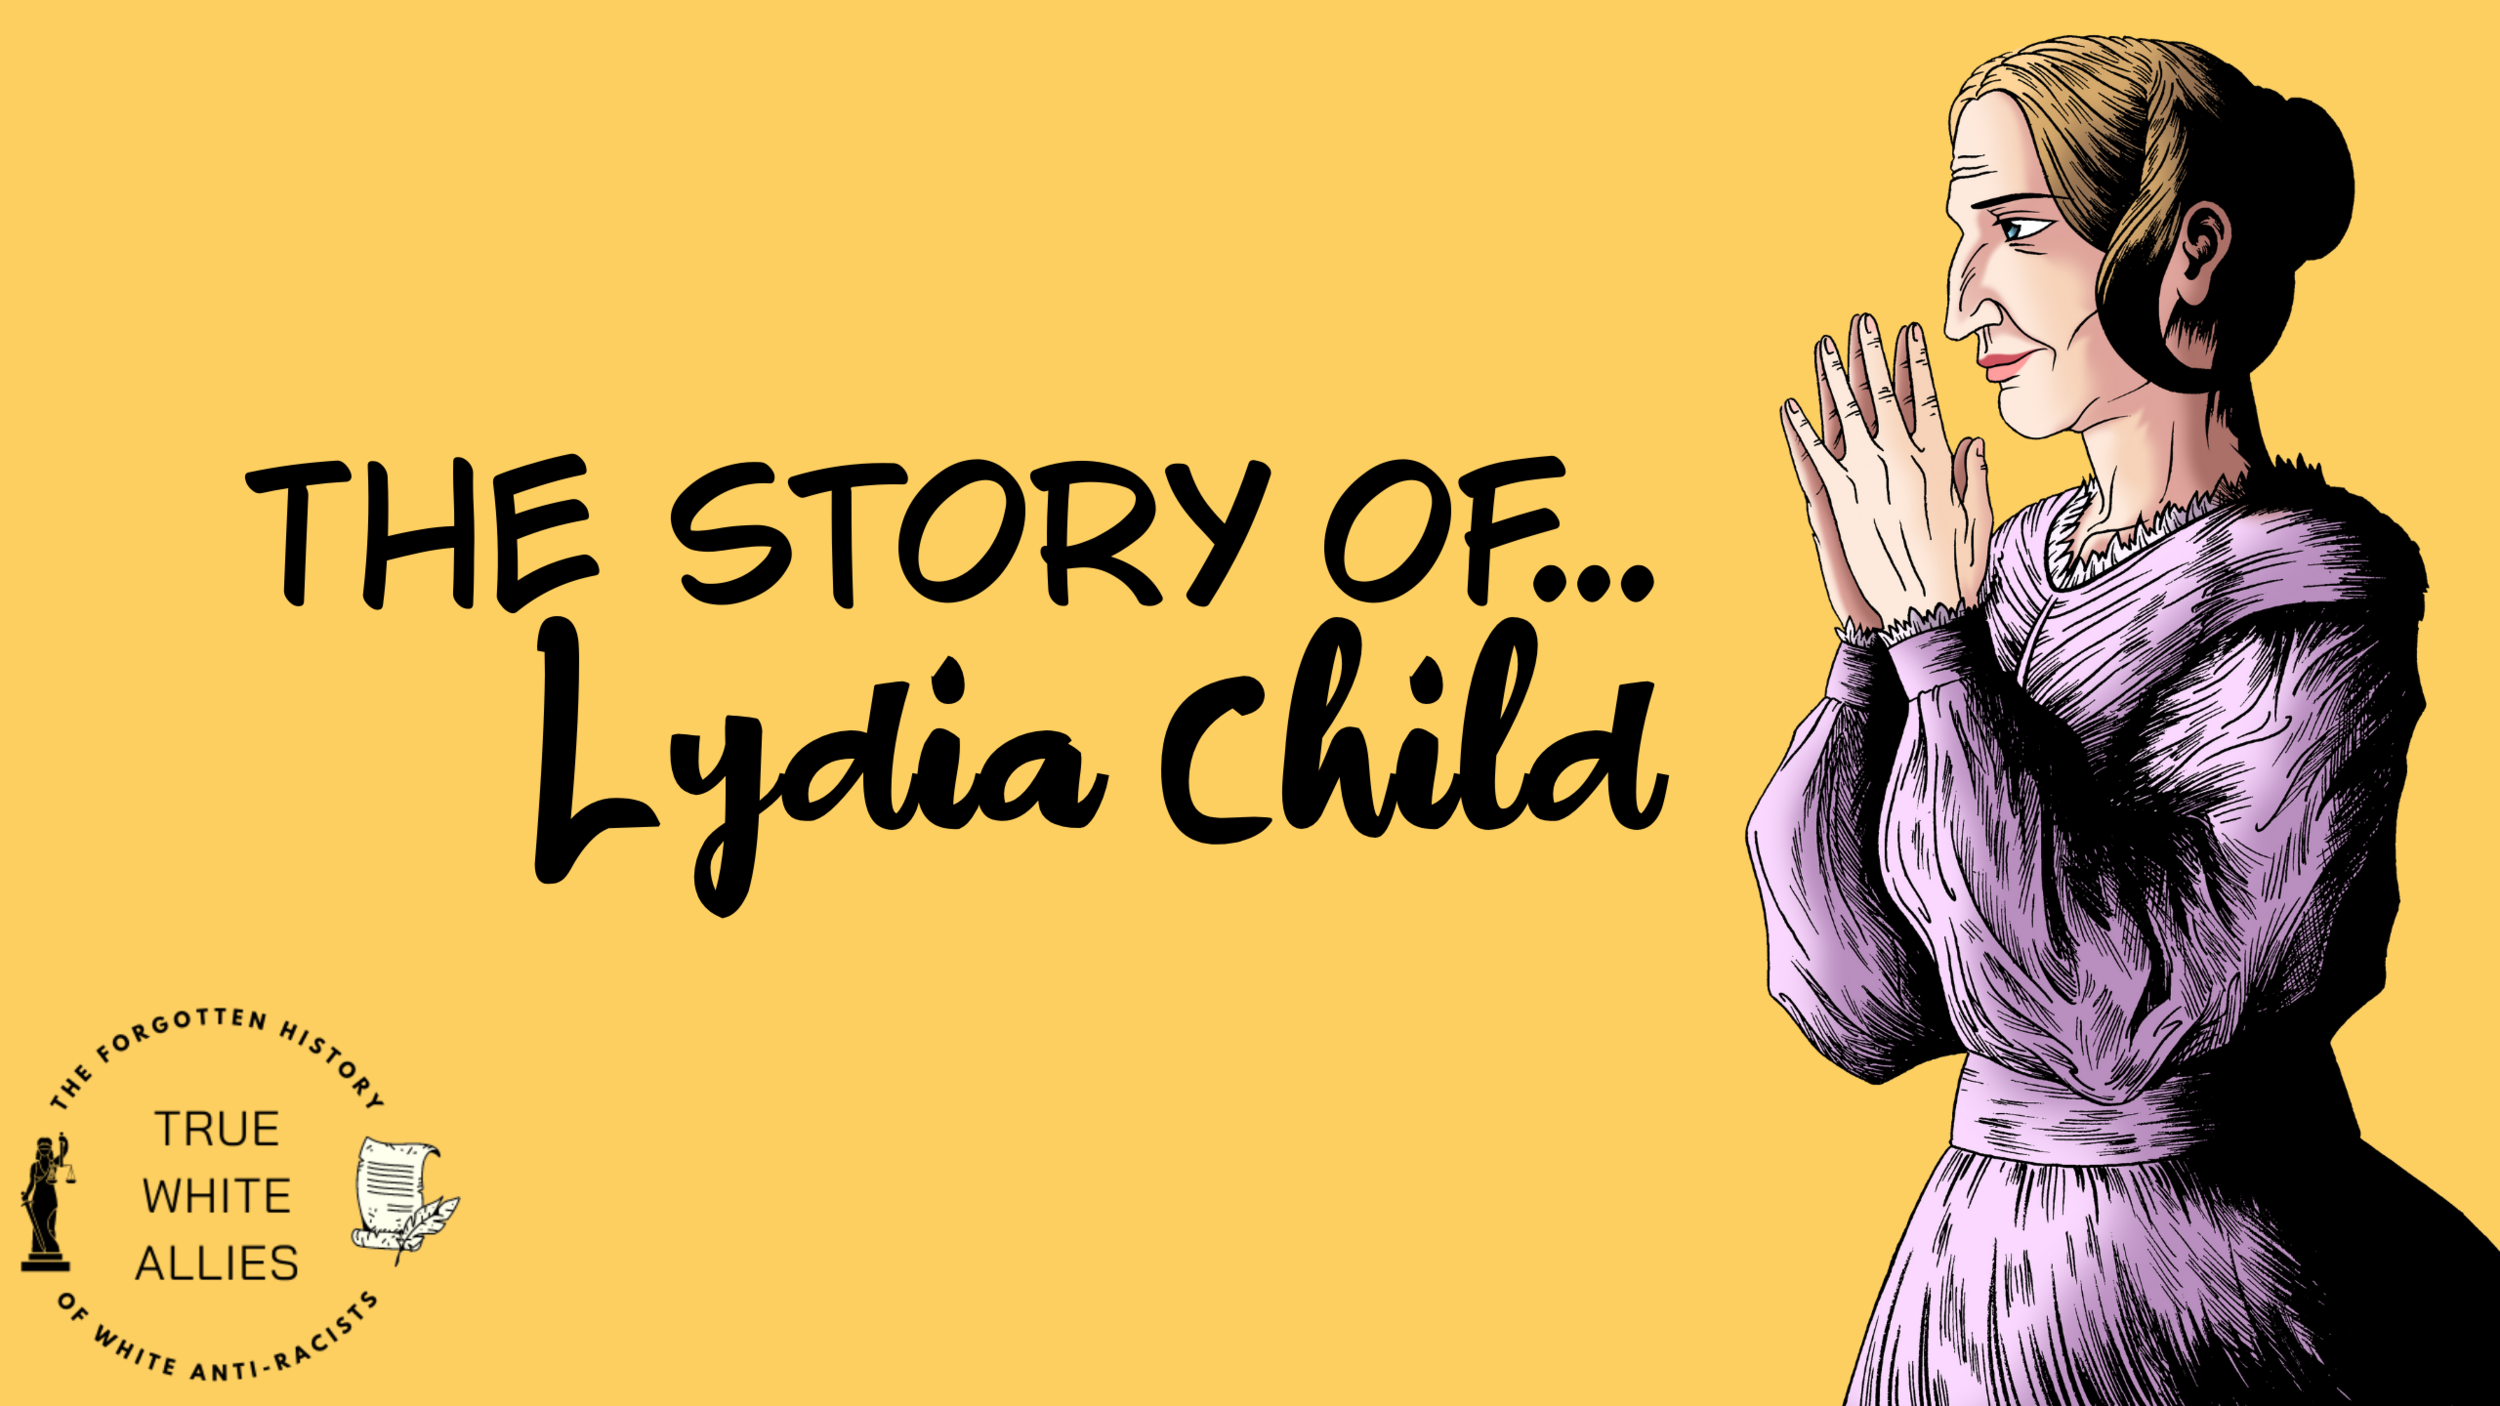 The Story of Lydia Child (Copy) (Copy) (Copy) (Copy)